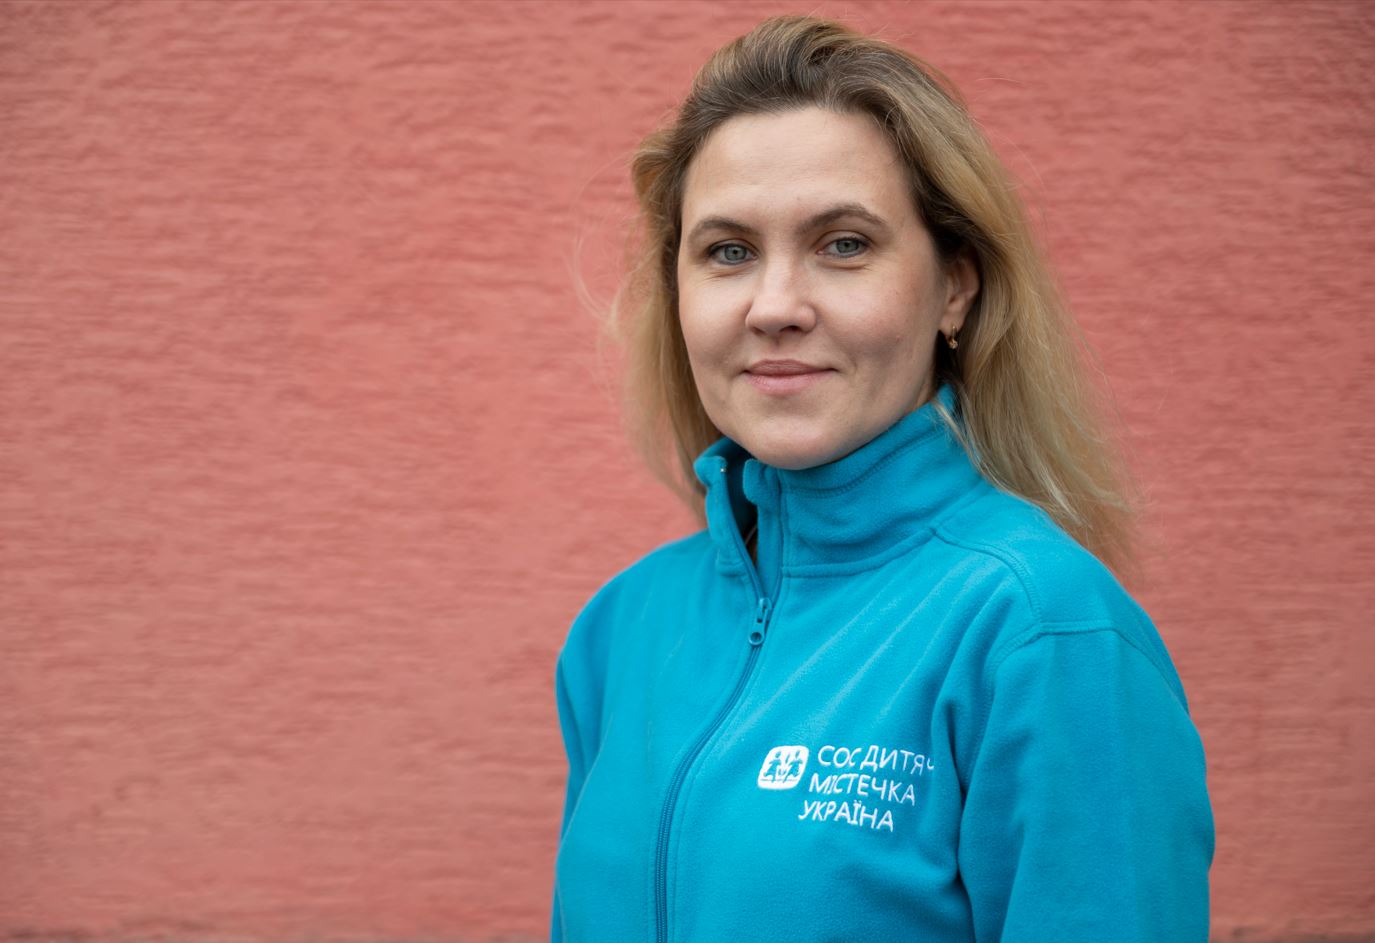 SOS-barnebyers programssjef i Ukraina, Darya Kasyanova. Hun har langt, blondt hår og har på seg en blå fleece med SOS-barnebyer Ukrainas logo. Foto: Katerina Ilievska